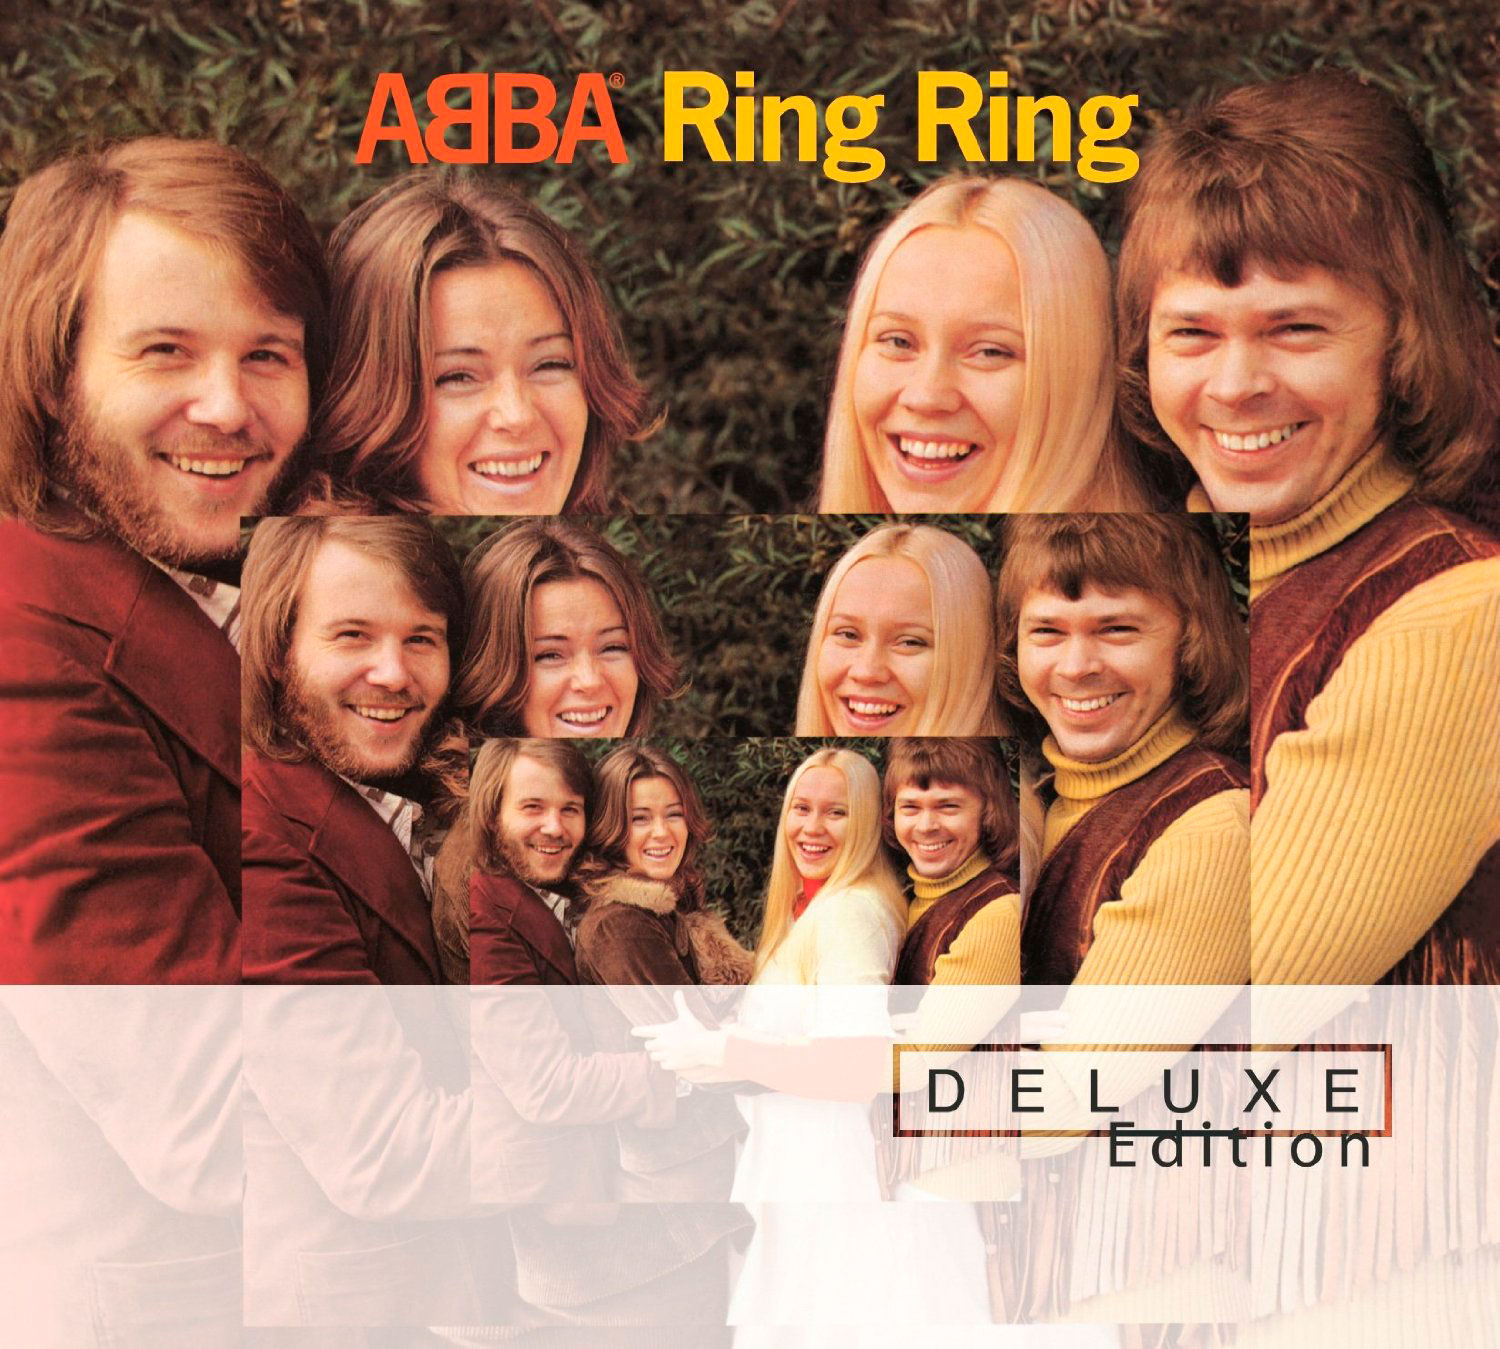 ABBA: Ring Ring - Deluxe edition, la portada del disco